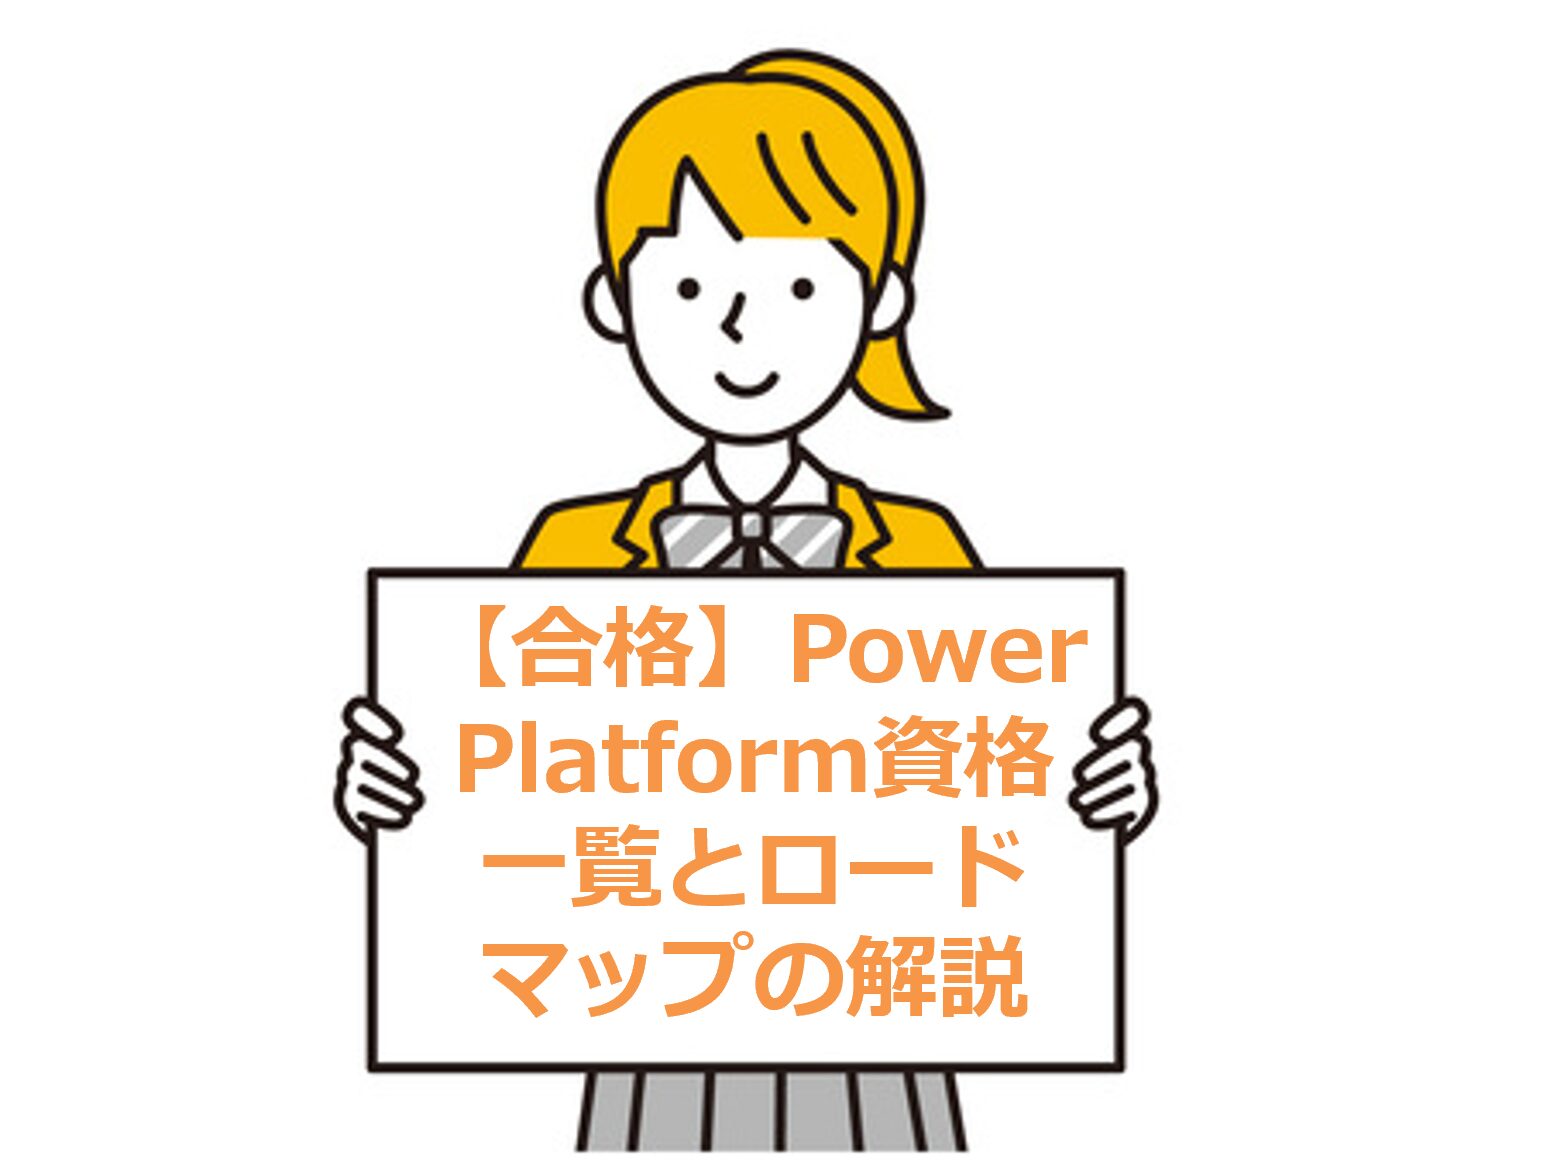 【合格】Power Platform資格一覧とロードマップの解説